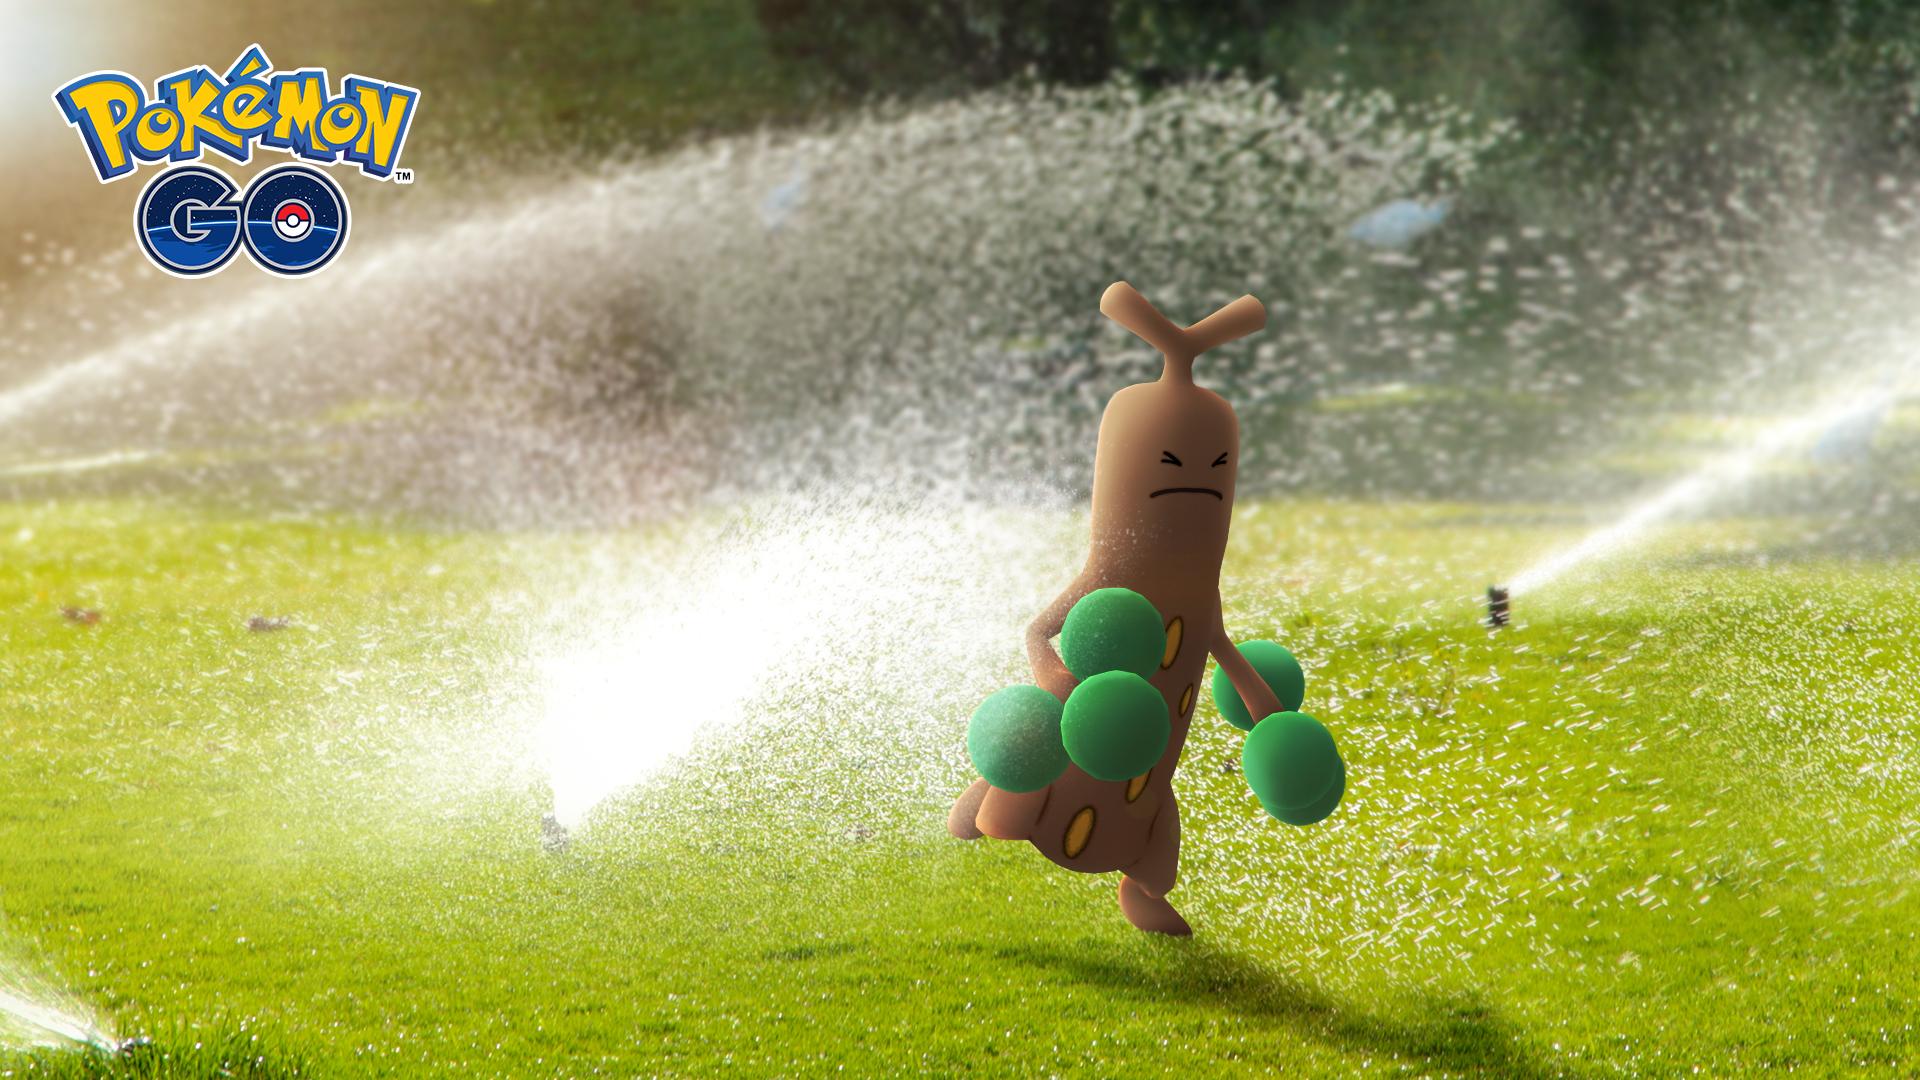 Pokemon Go Japan トレーナーの皆さん ウソッキー には水 をやらないように 木のまねをしていますが ウソッキー はいわタイプのポケモンで 水が大の苦手です ポケモンgo T Co 8ursfwx3wi Twitter